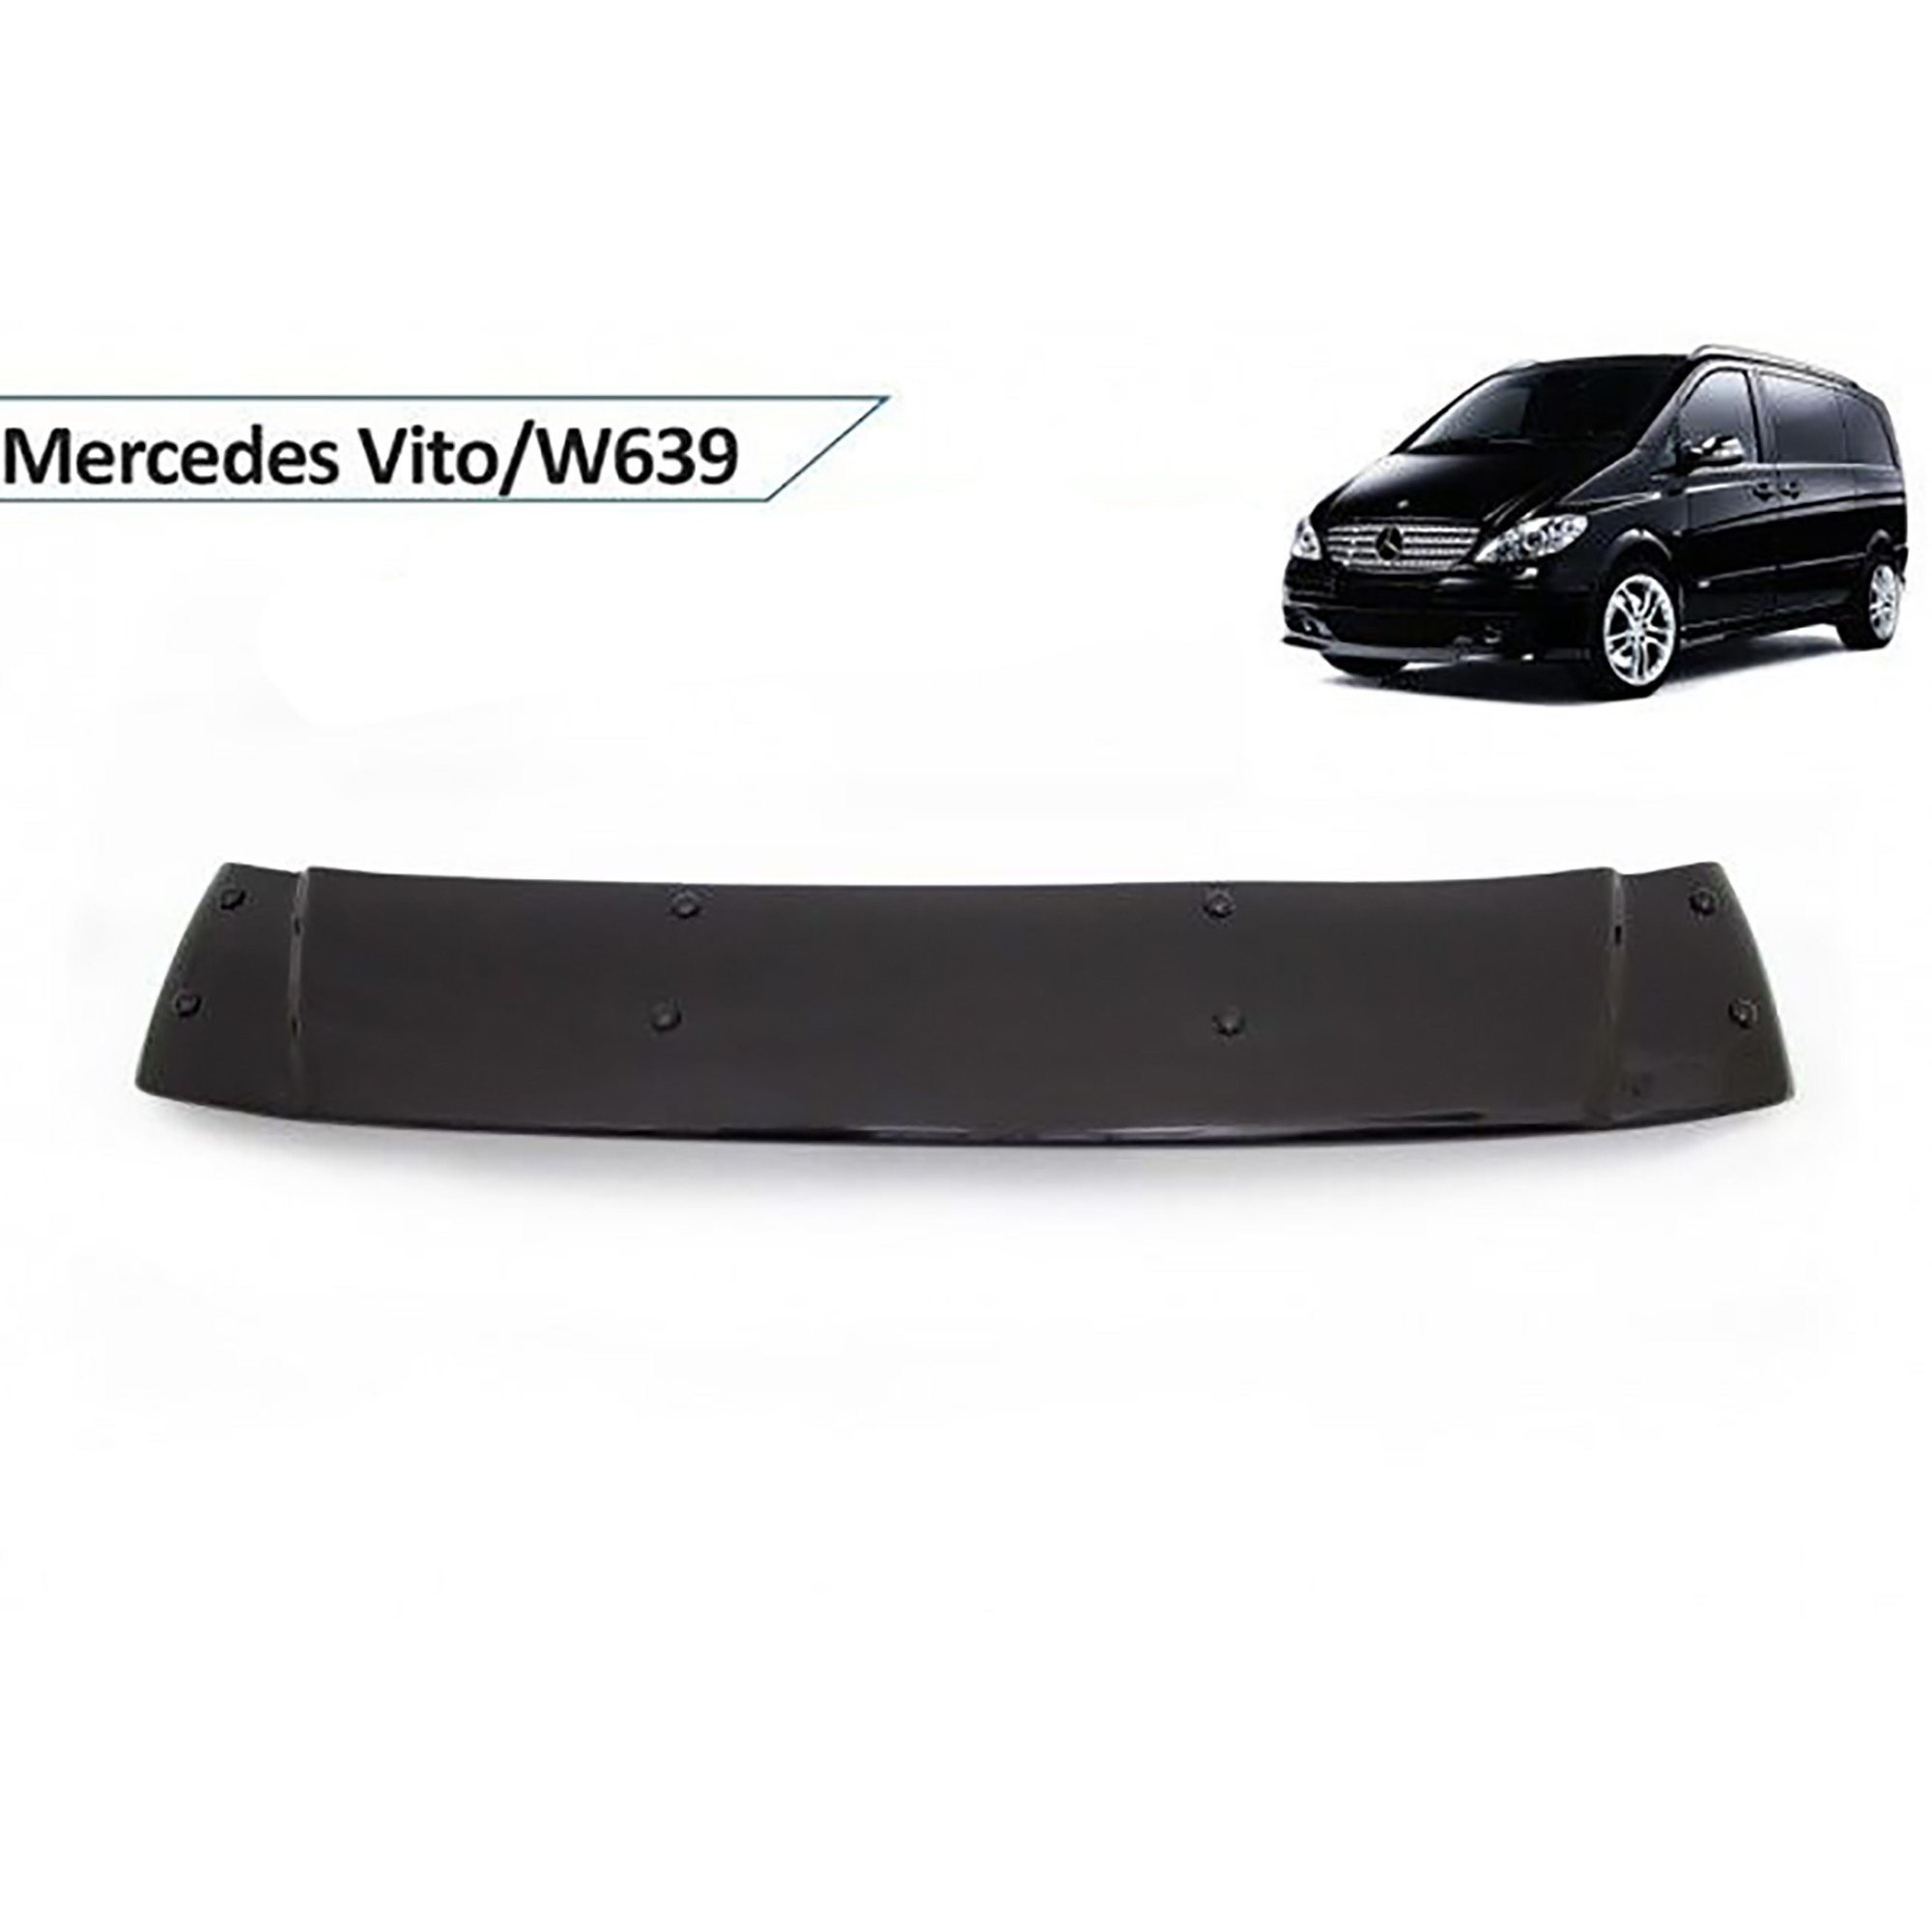 Mercedes Vito (2003+) - Ön Cam Güneşliği - (ABS Plastik) - (W639-Van)